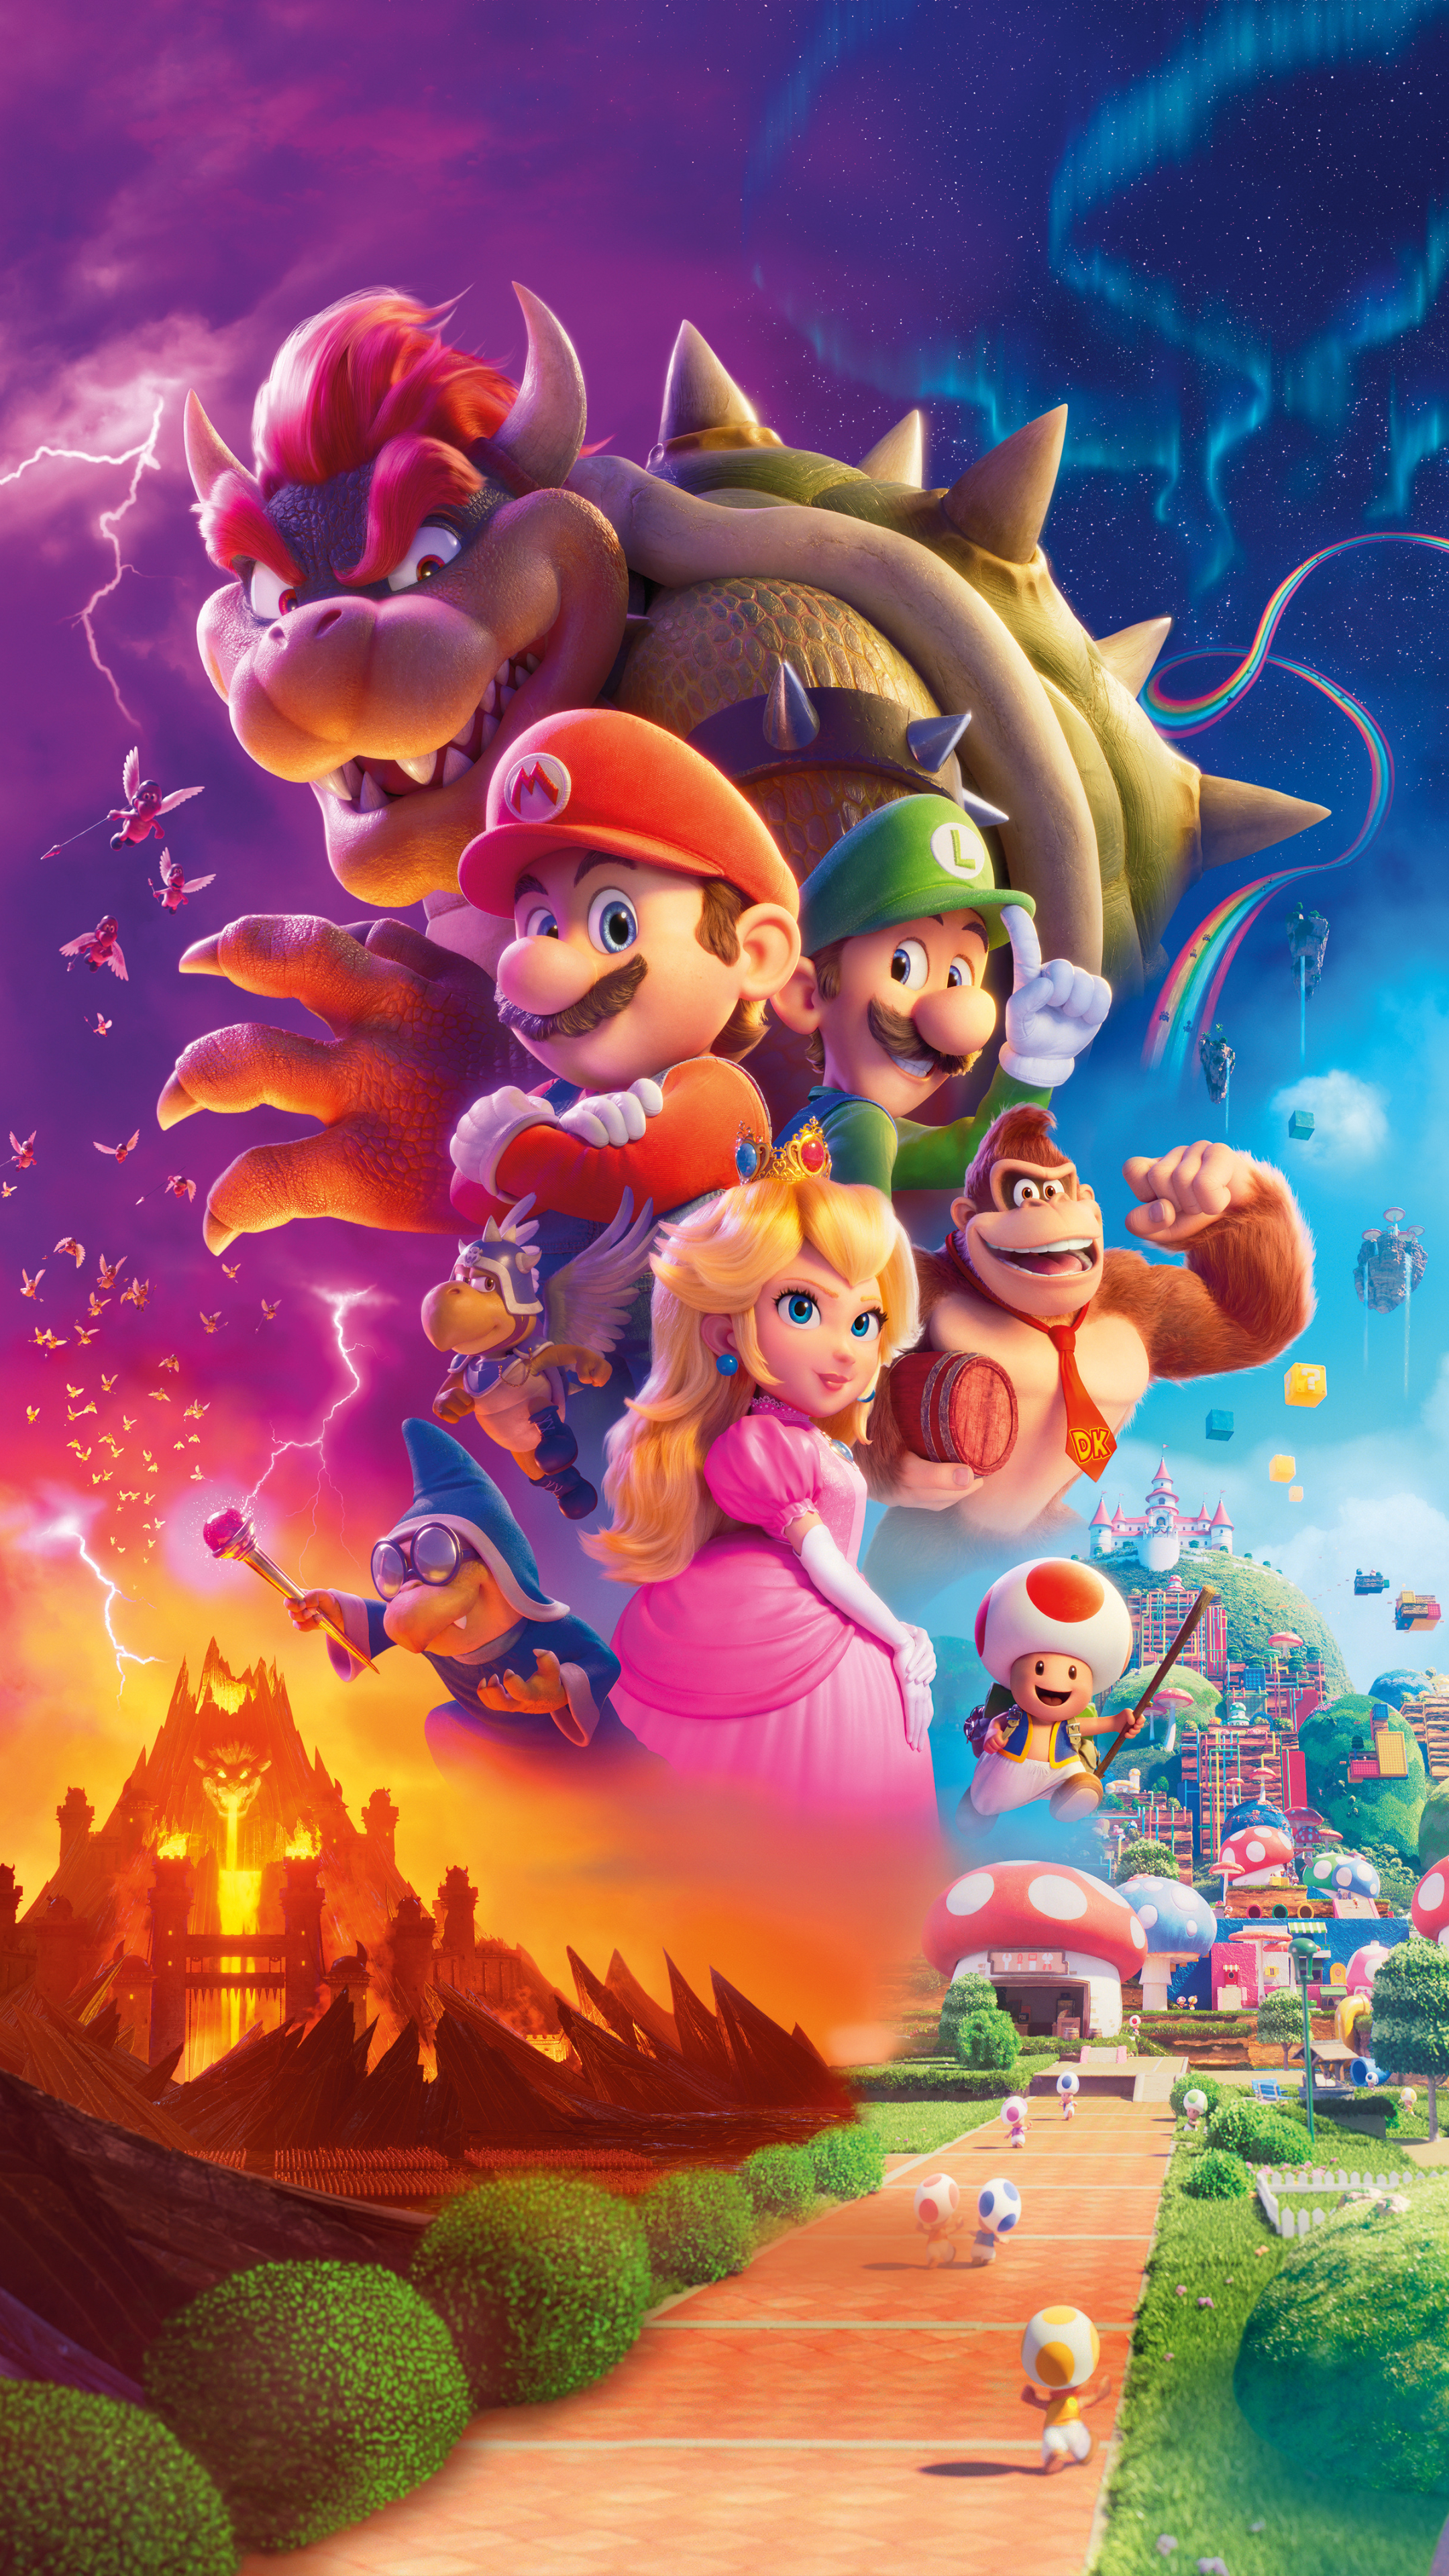 Là fan của trò chơi Super Mario Bros? Thật tuyệt vời khi nay bạn có thể tải hình nền điện thoại siêu đáng yêu với hình ảnh những nhân vật quen thuộc trong trò chơi này. Sẵn sàng để khiến cho người khác ngạc nhiên và ghen tị khi thấy hình nền điện thoại của bạn chưa? Click để xem nào!